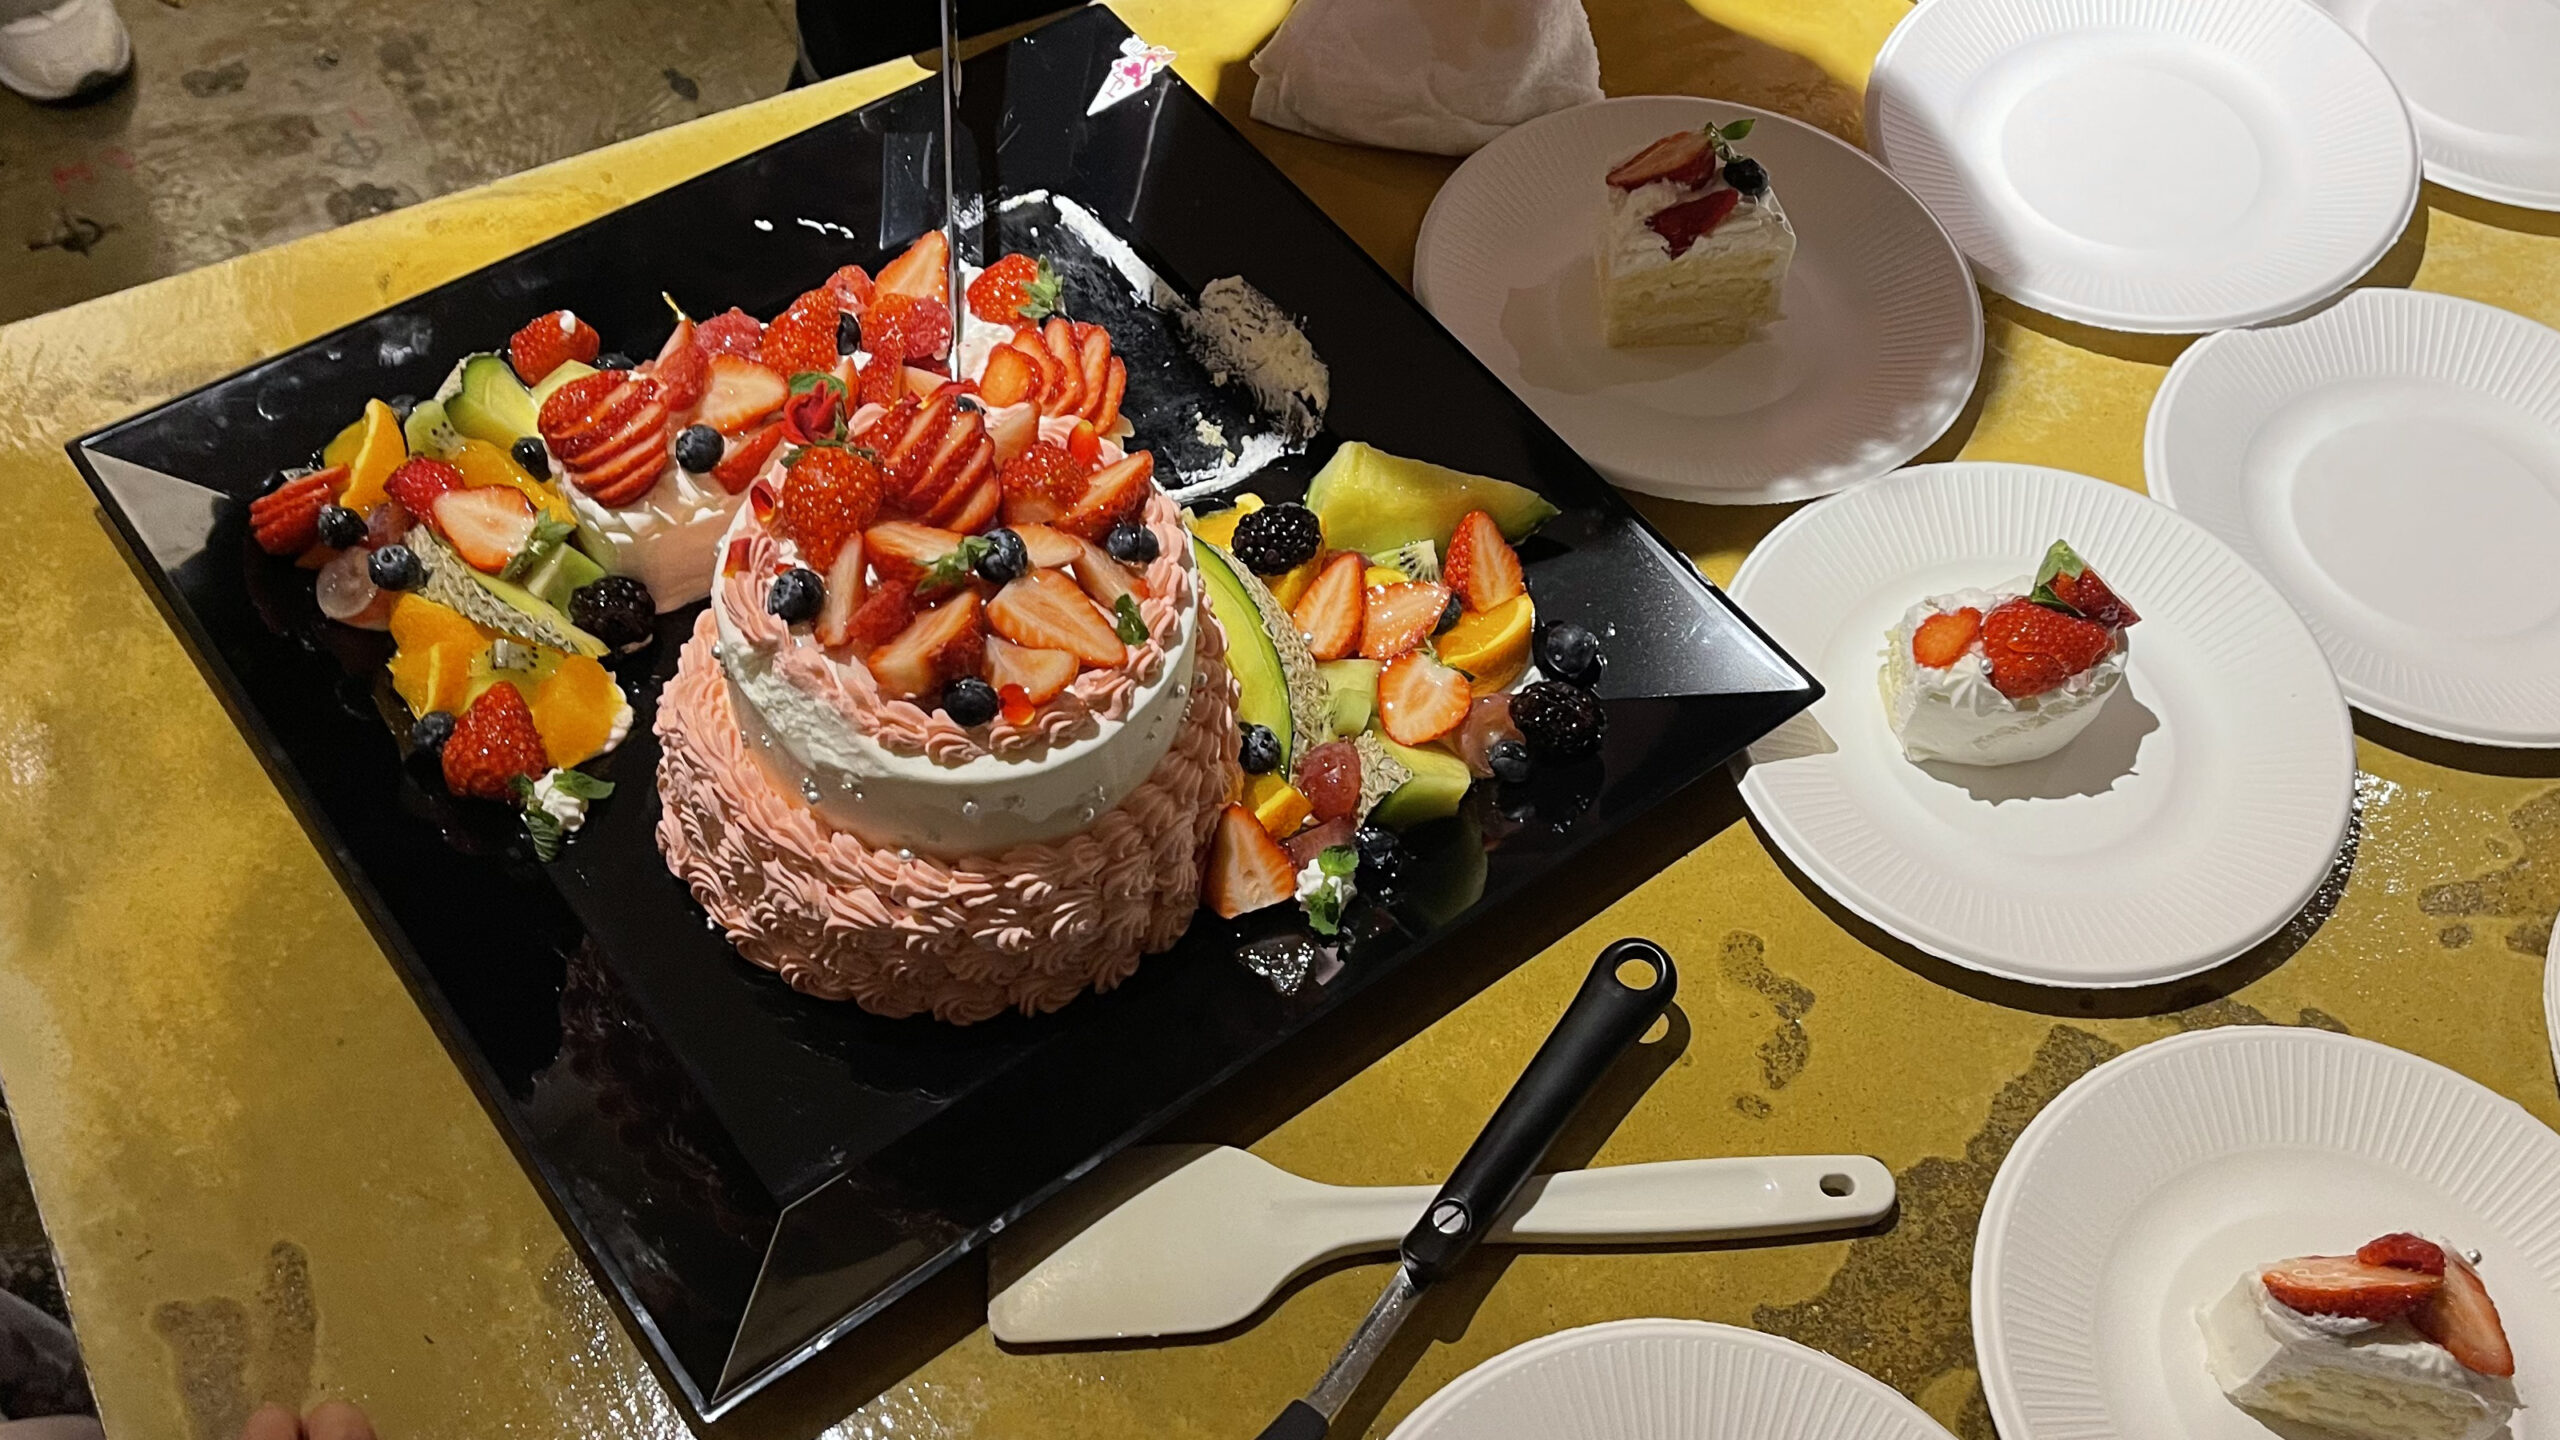 ケーキがすごく美味しそうだった 小学1年生娘誕生日会 出張マジシャン 港区, 東京都